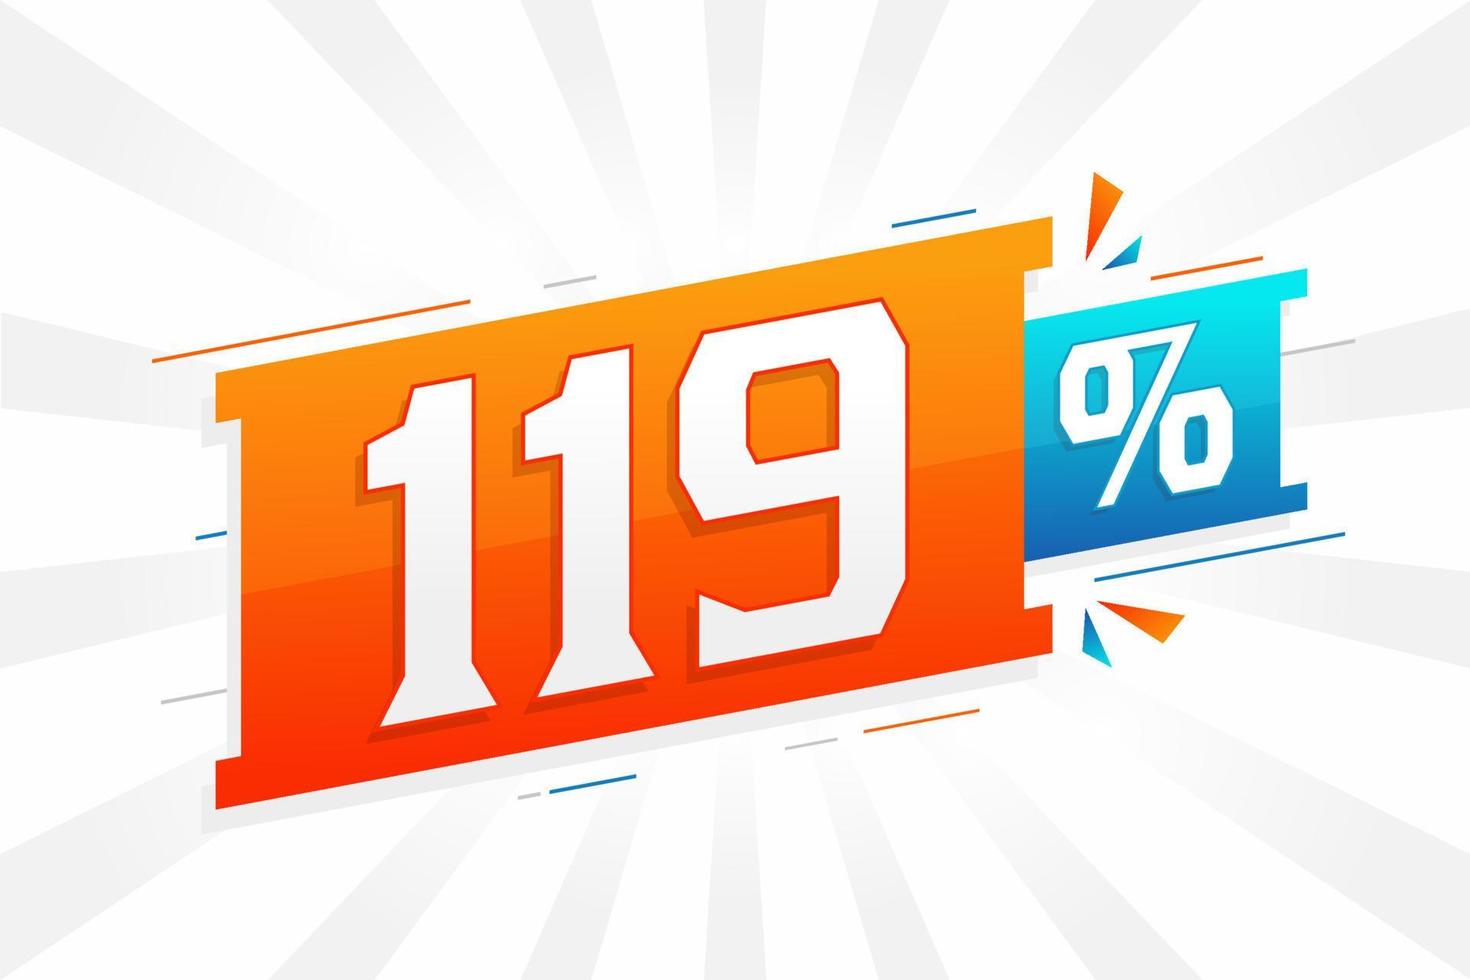 Promoción de banner de marketing de 119 descuentos. 119 por ciento de diseño promocional de ventas. vector